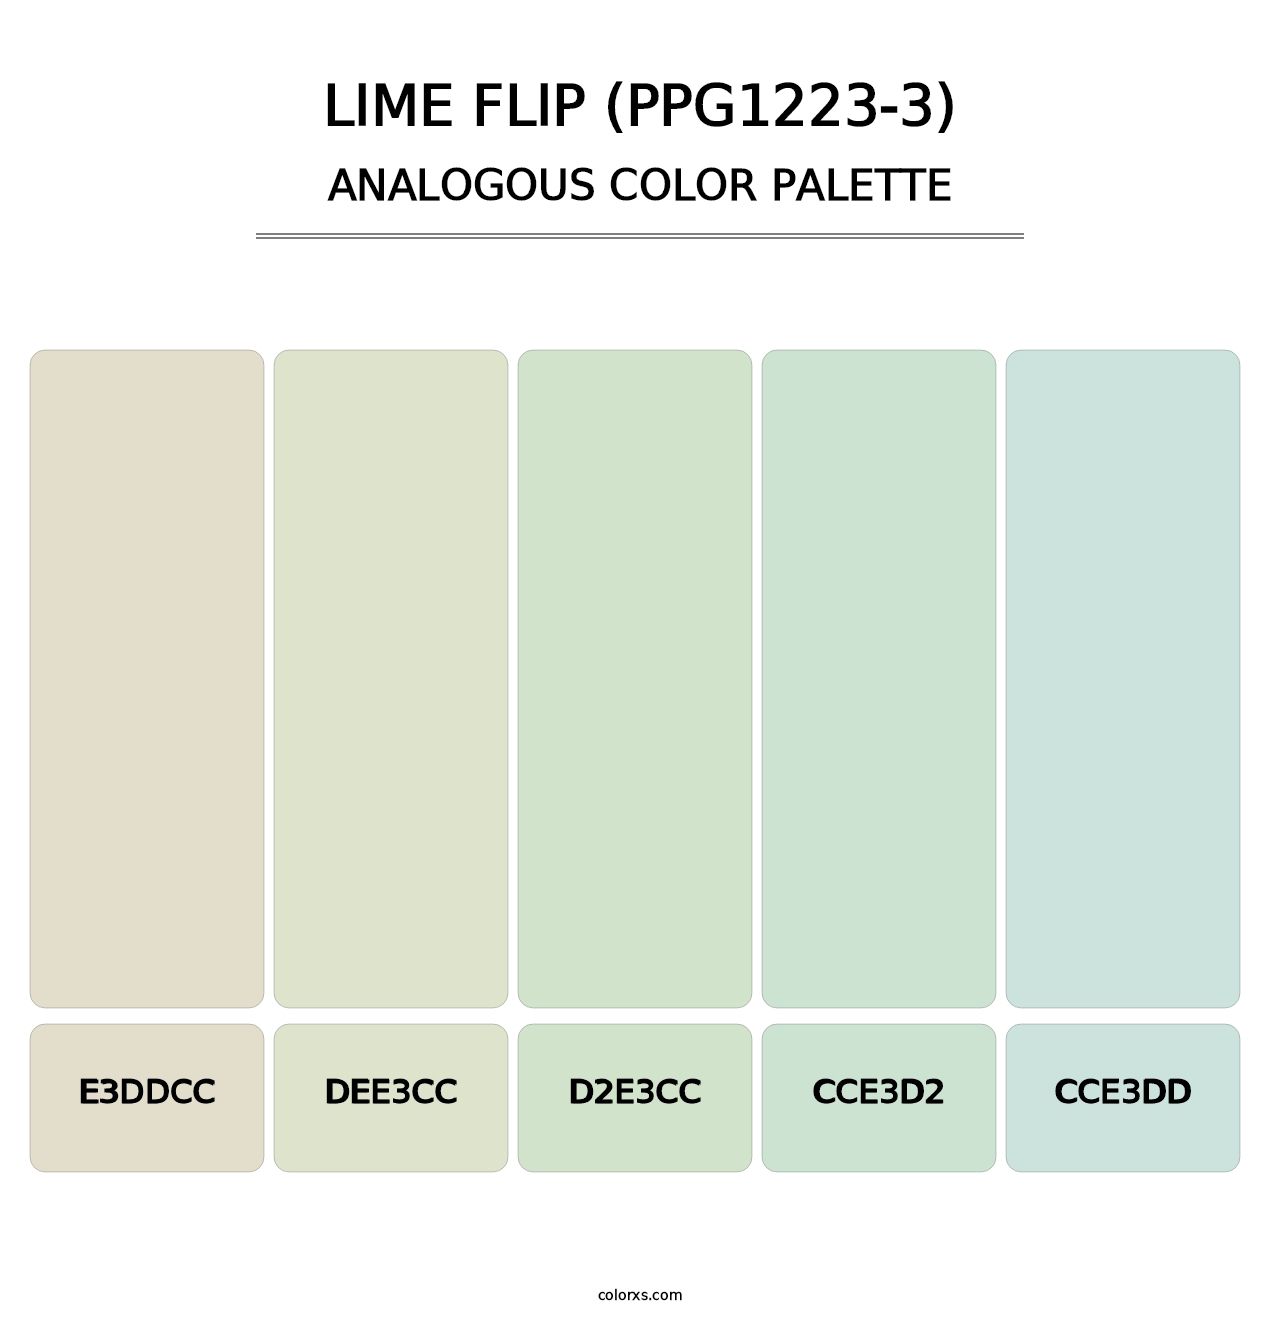 Lime Flip (PPG1223-3) - Analogous Color Palette